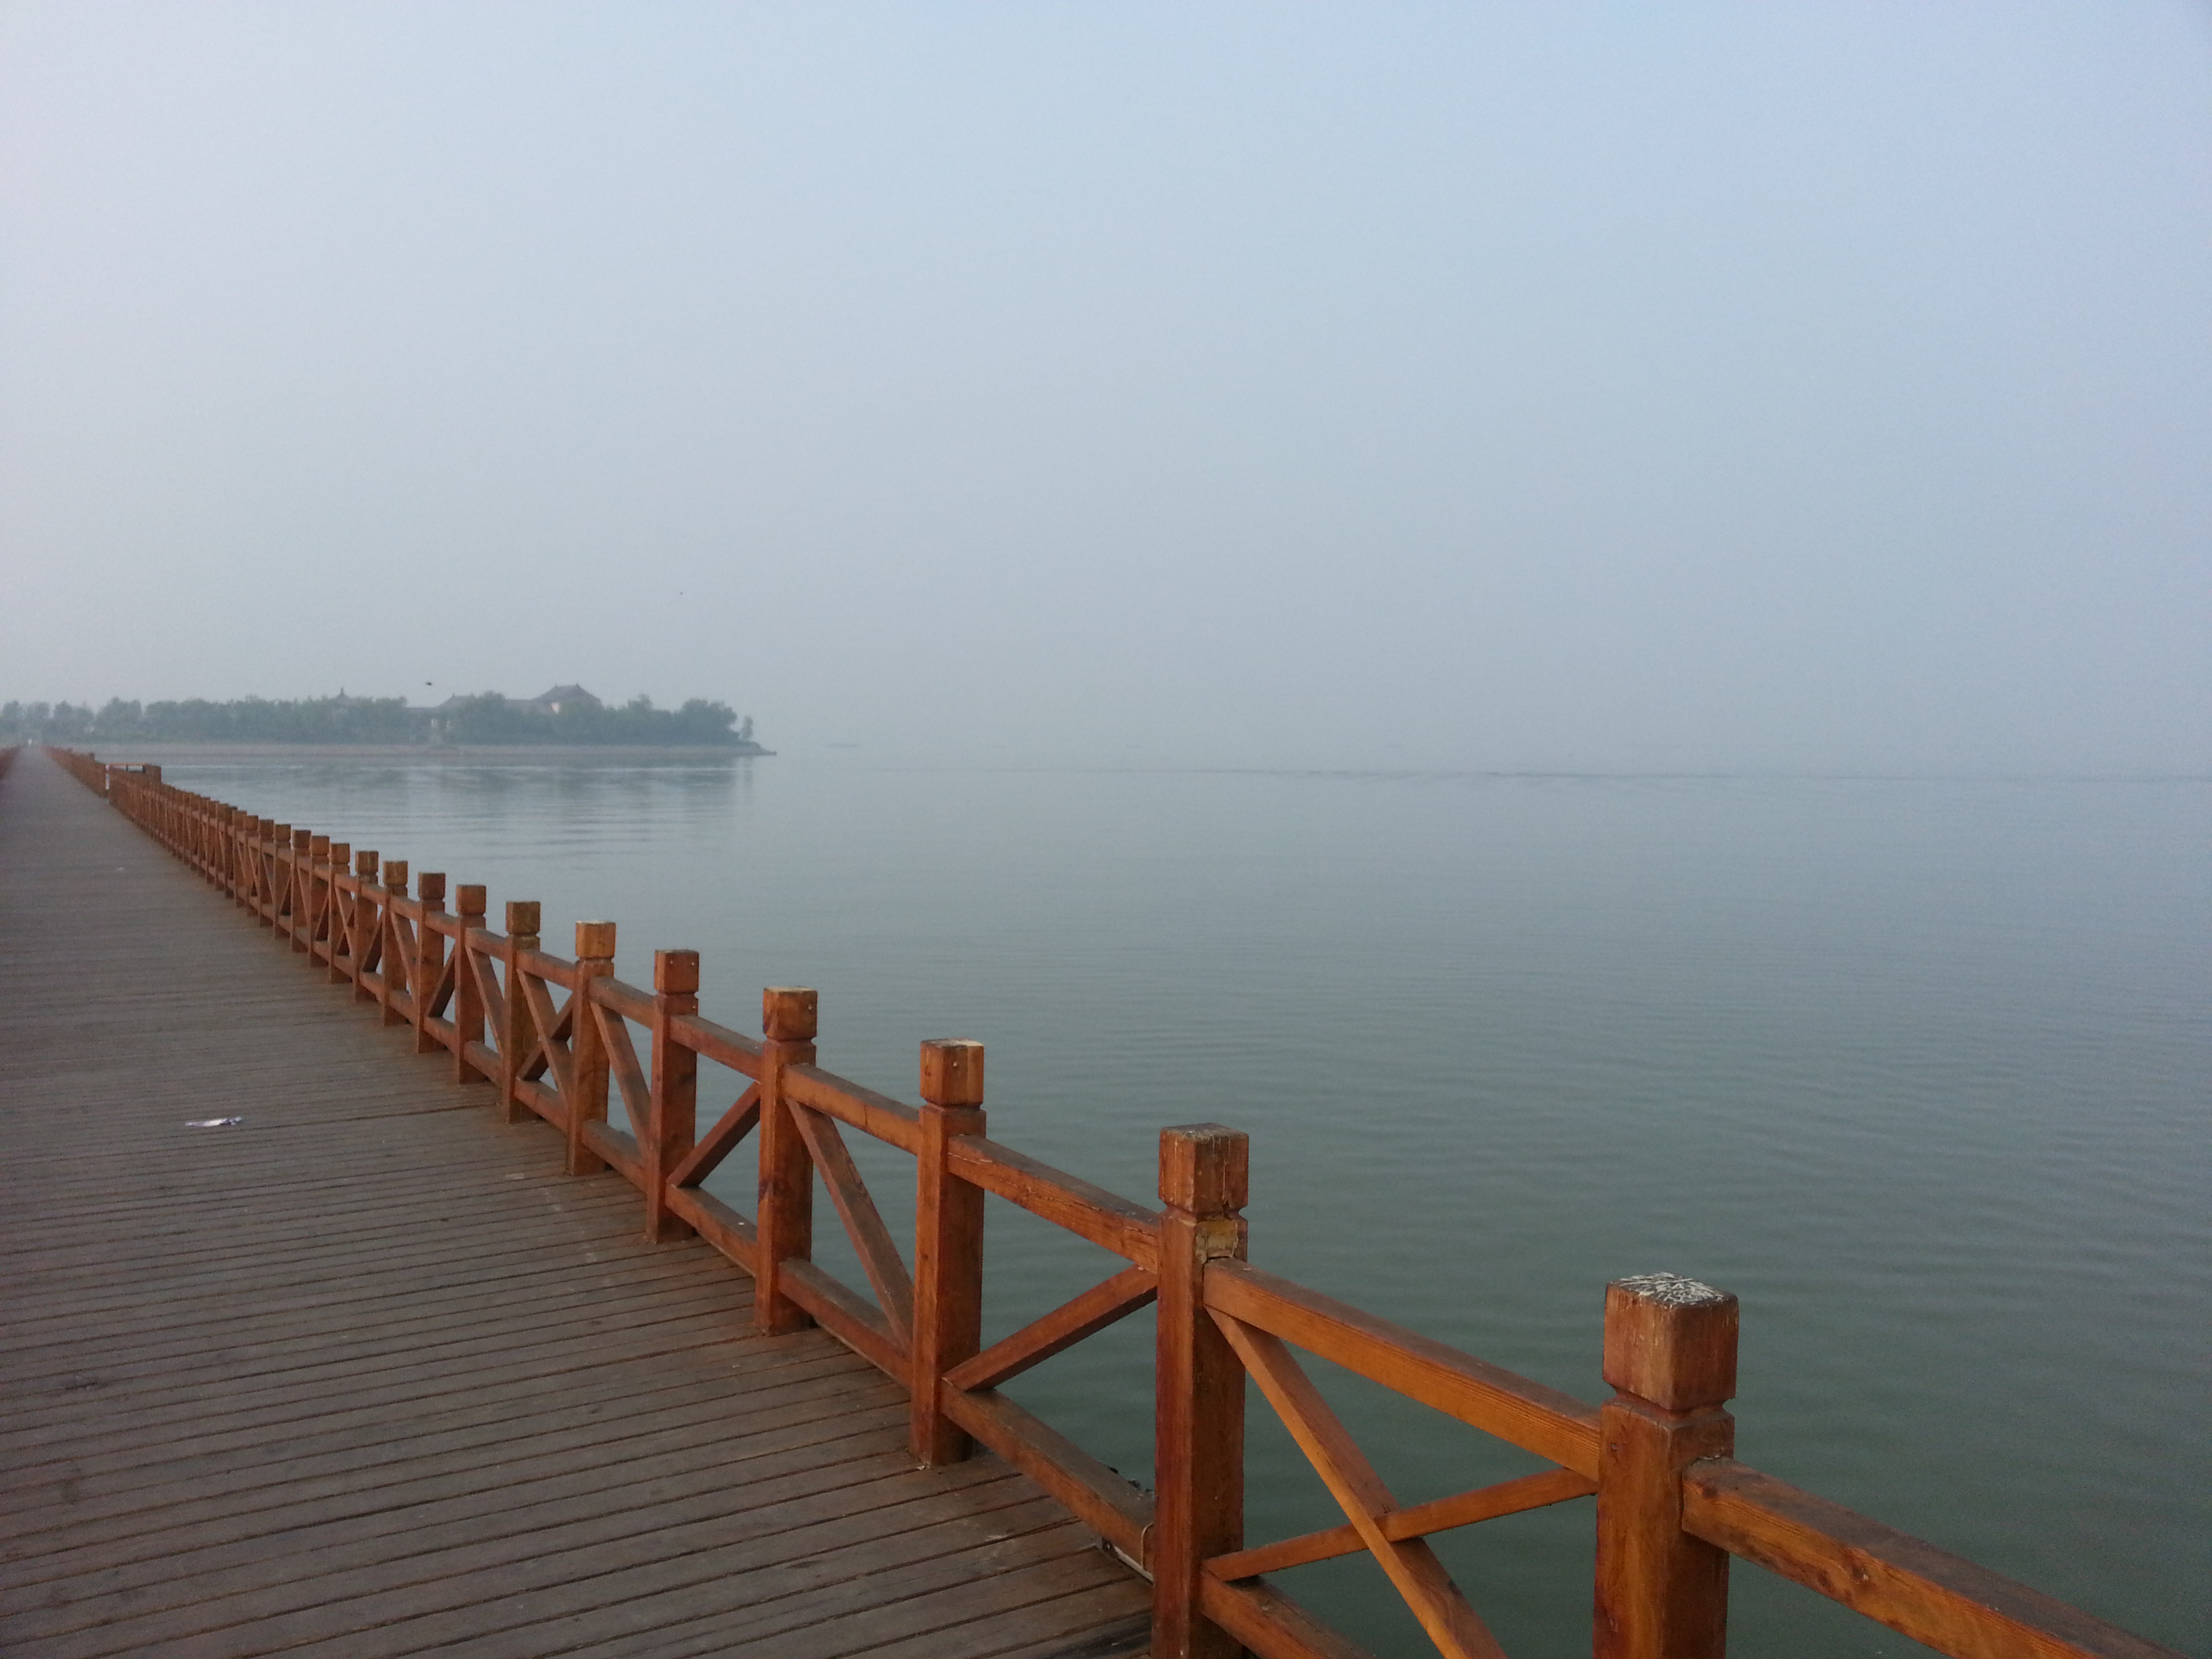 浮龙湖生态旅游区图片